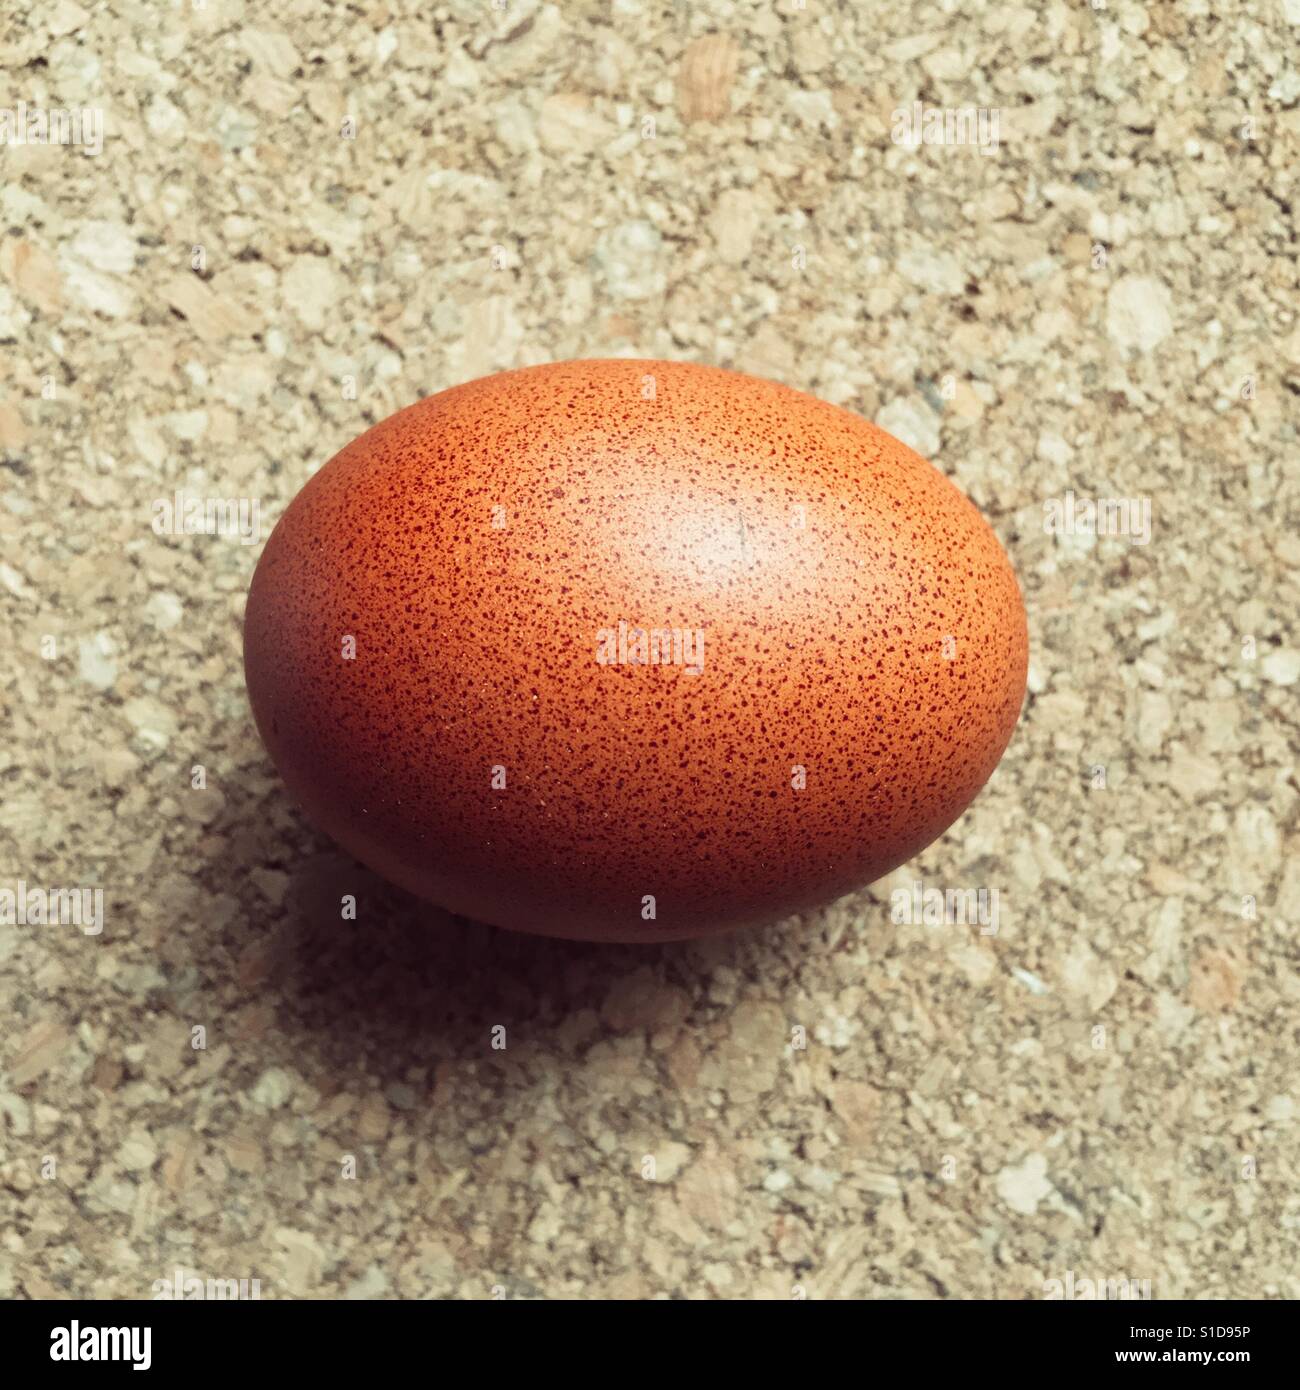 Seul repéré brown egg sur surface en liège Banque D'Images